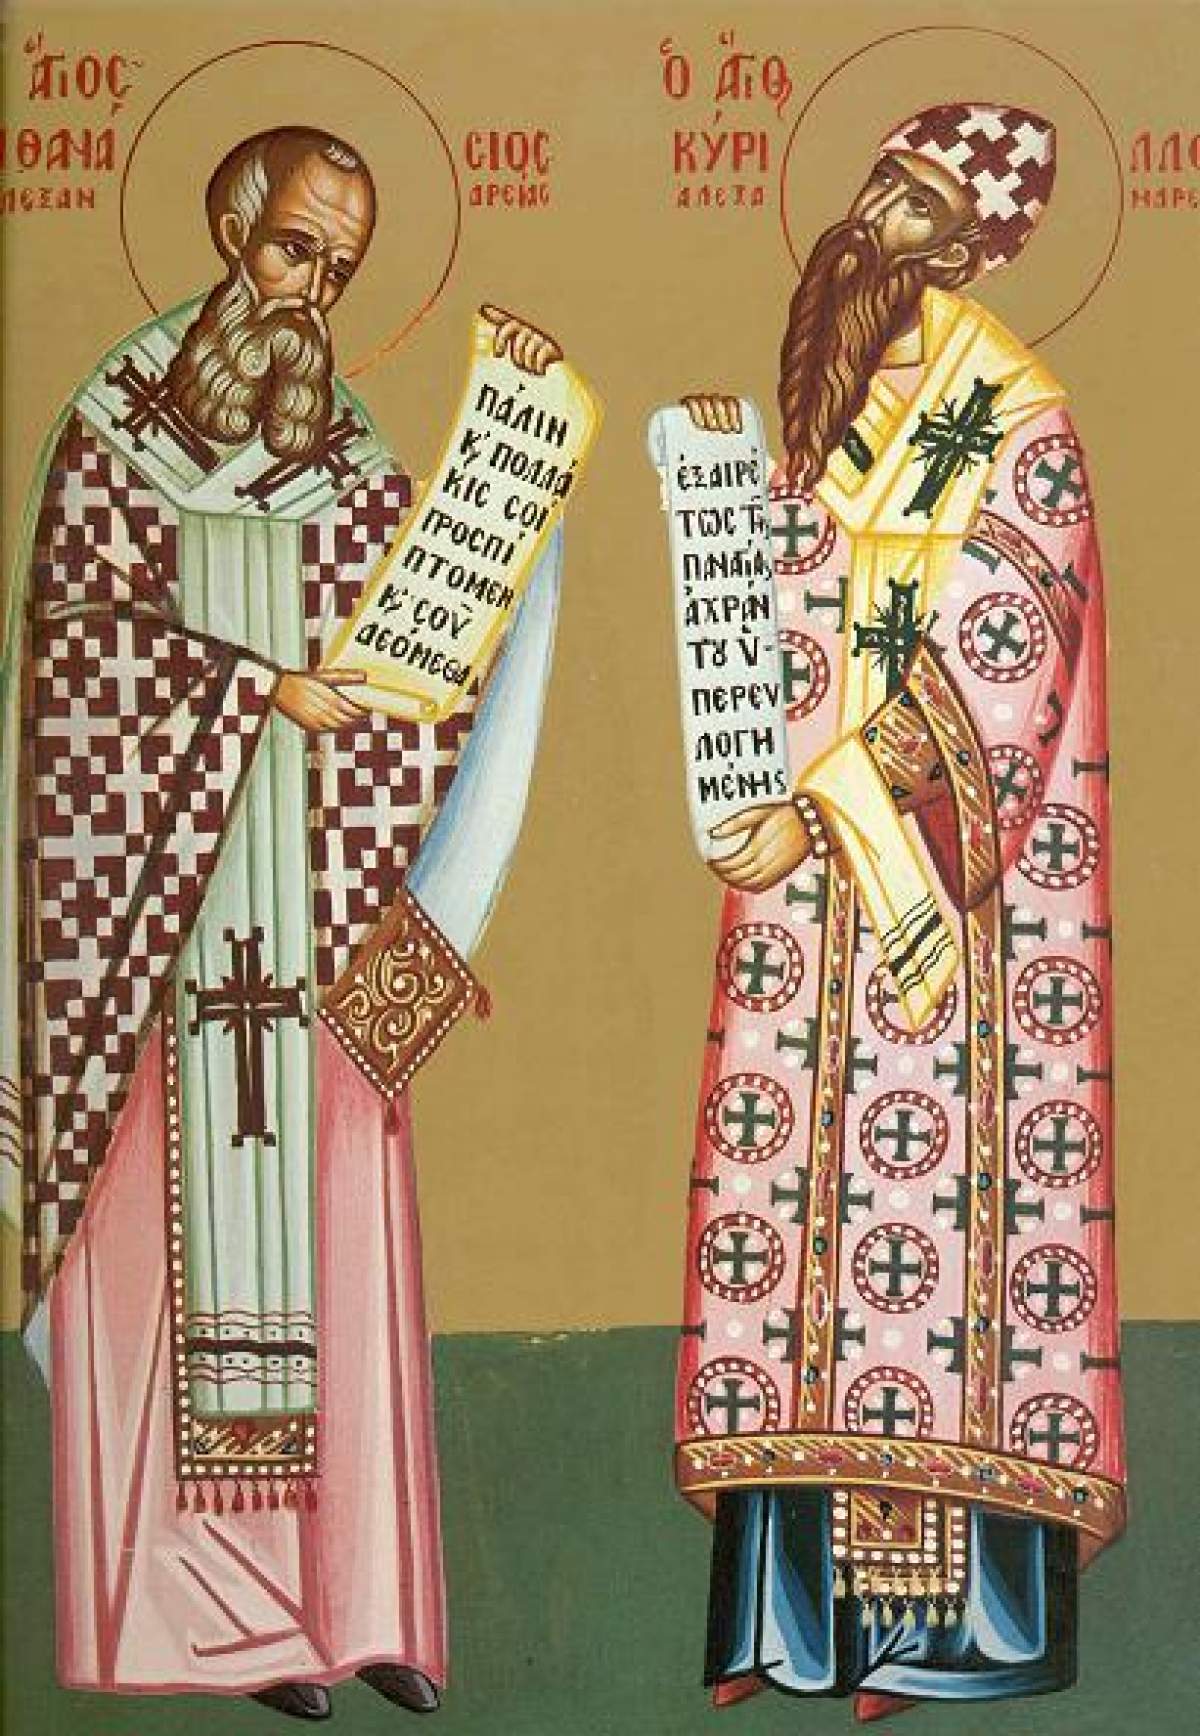 Sfinții Atanasie şi Chiril